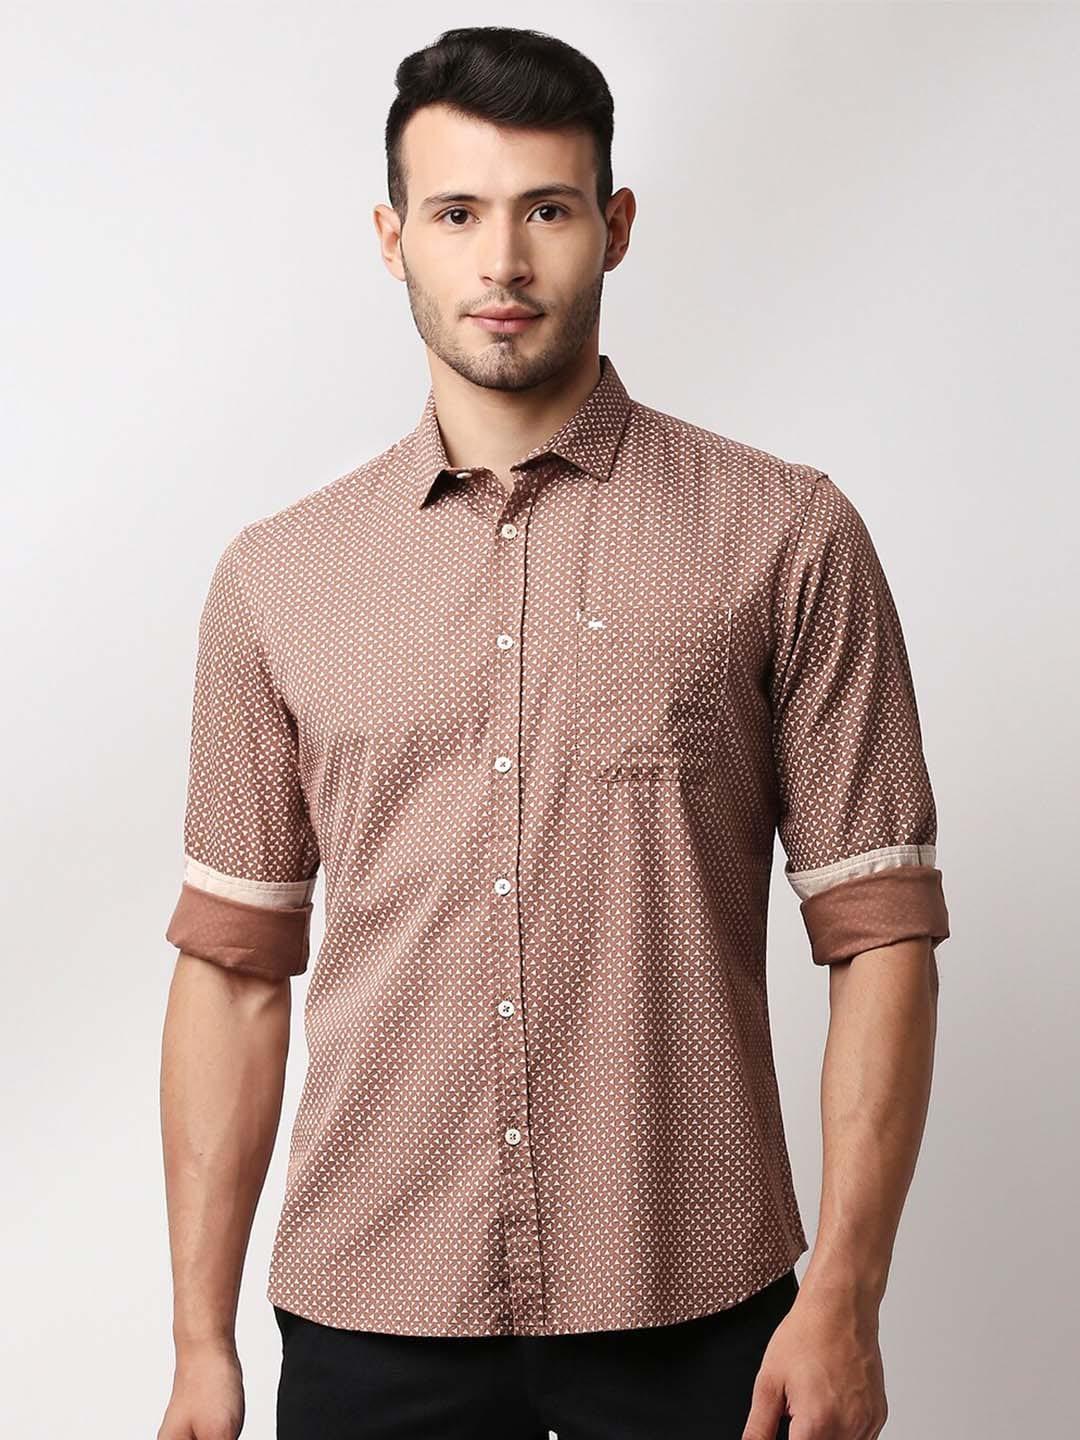 basics-men-brown-slim-fit-geometric-printed-casual-shirt